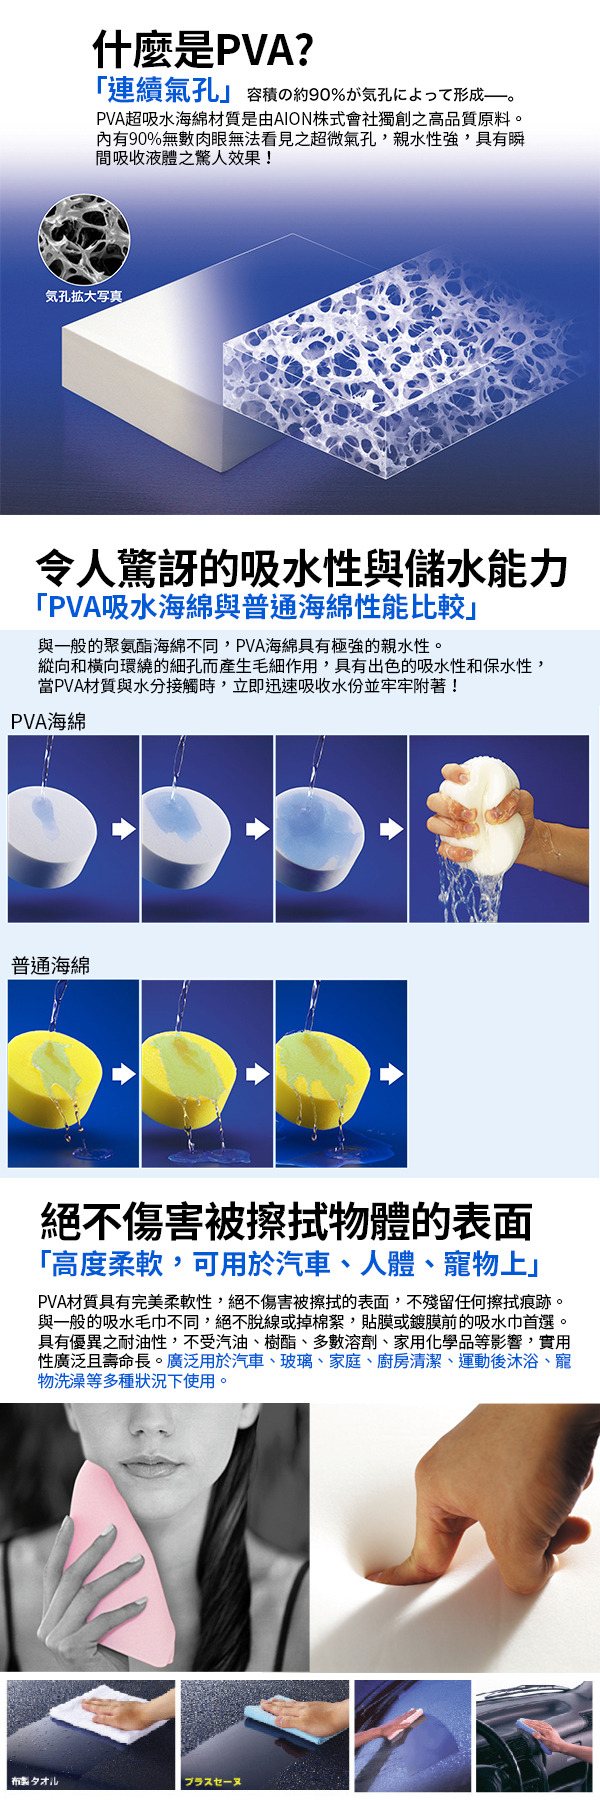 什麼是PVA?日本AION獨特發泡技術 無棉絮成分 物體擦拭與吸水時不會產生惱人棉絮 不因掉毛問題導致吸水力下降 可瞬間快速吸收液體